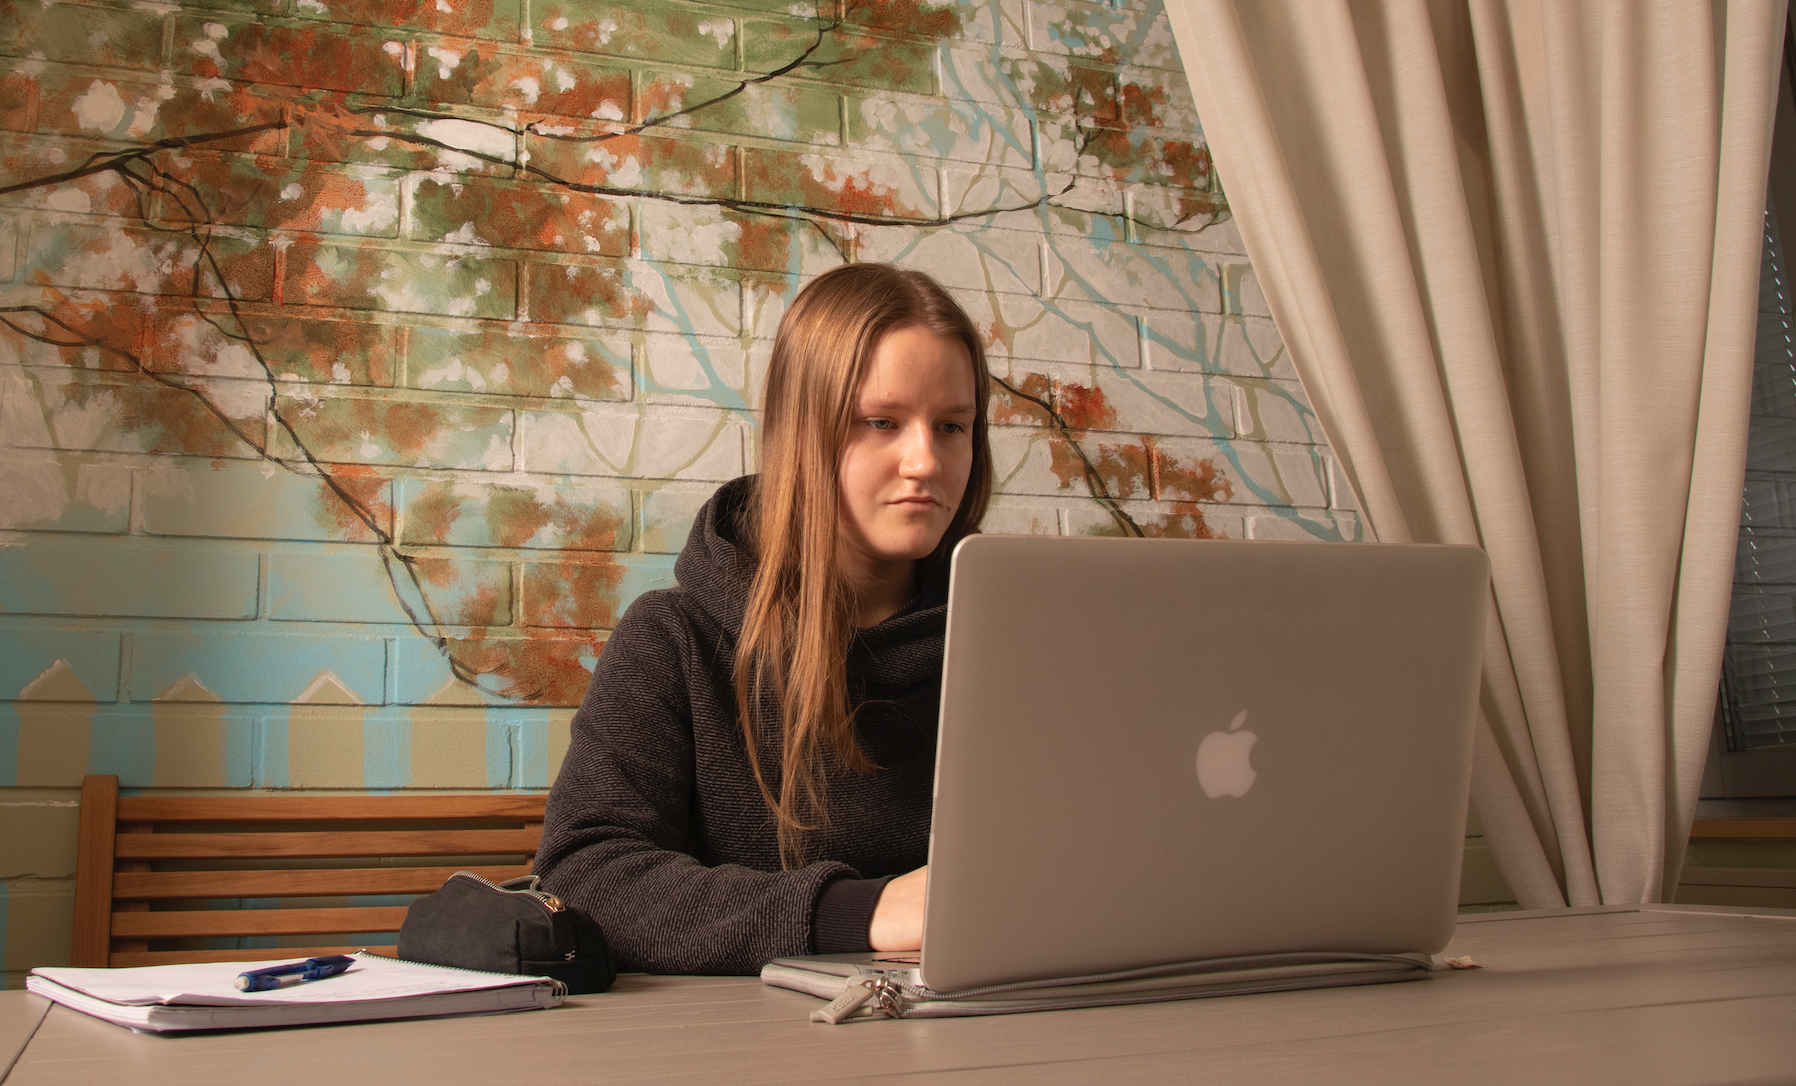 Opiskelija työskentelee tietokoneella ja taustalla näkyy syksyistä puuta esittävä seinämaalaus.